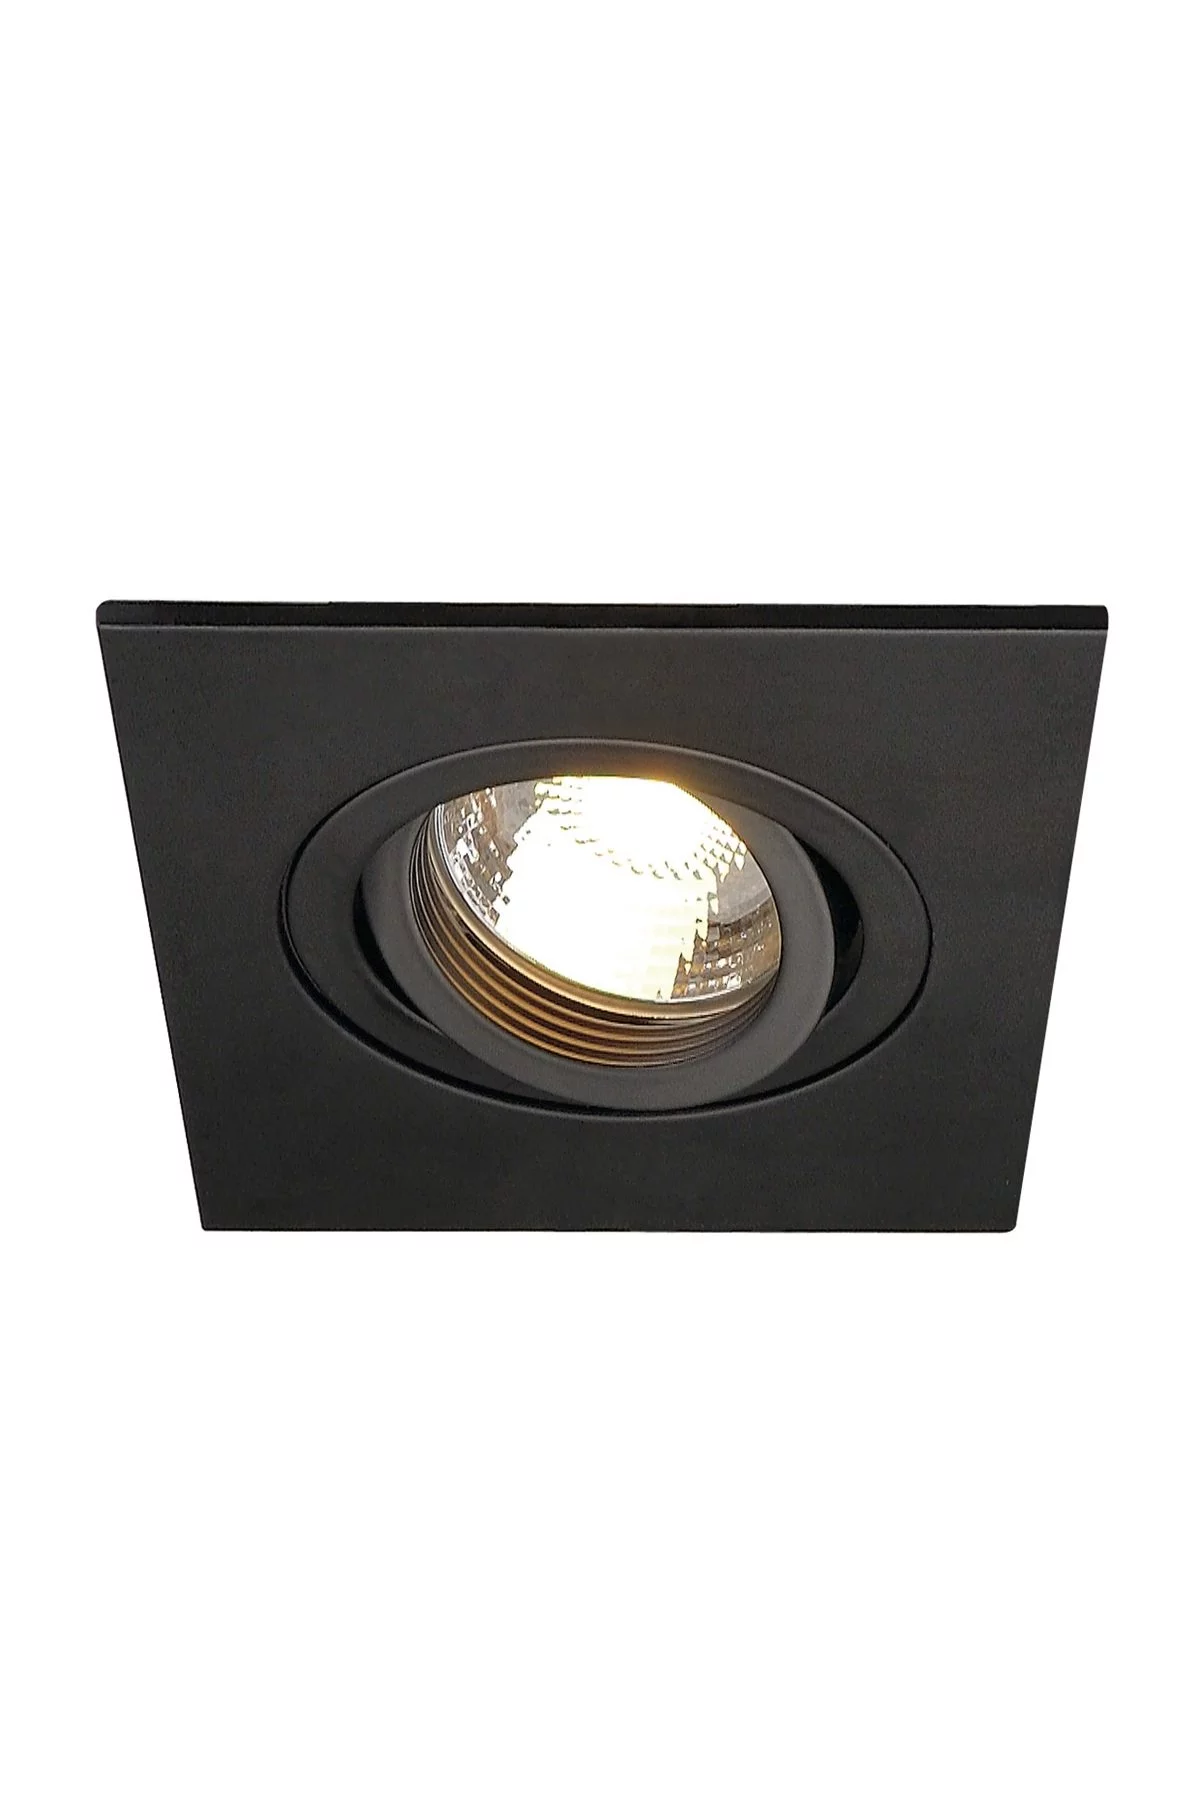   
                        Точечный светильник SLV  (Германия) 86001    
                         в стиле хай-тек.  
                        Тип источника света: светодиодные led, галогенные.                         Форма: квадрат.                                                                          фото 1